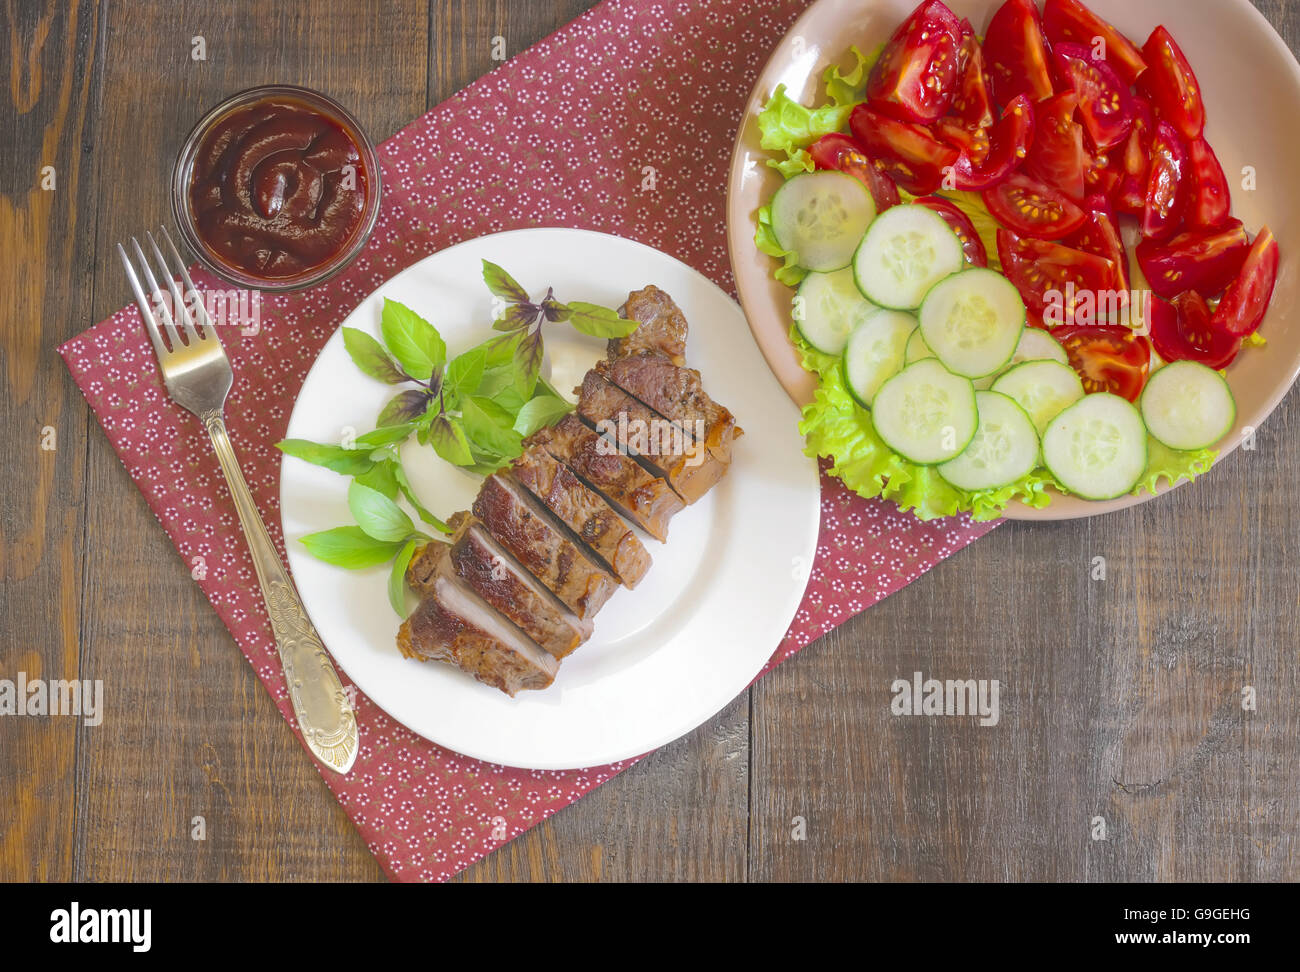 Gegrilltes Rindersteak mit Salat und Sauce auf Holztisch im weißen Teller. Stockfoto